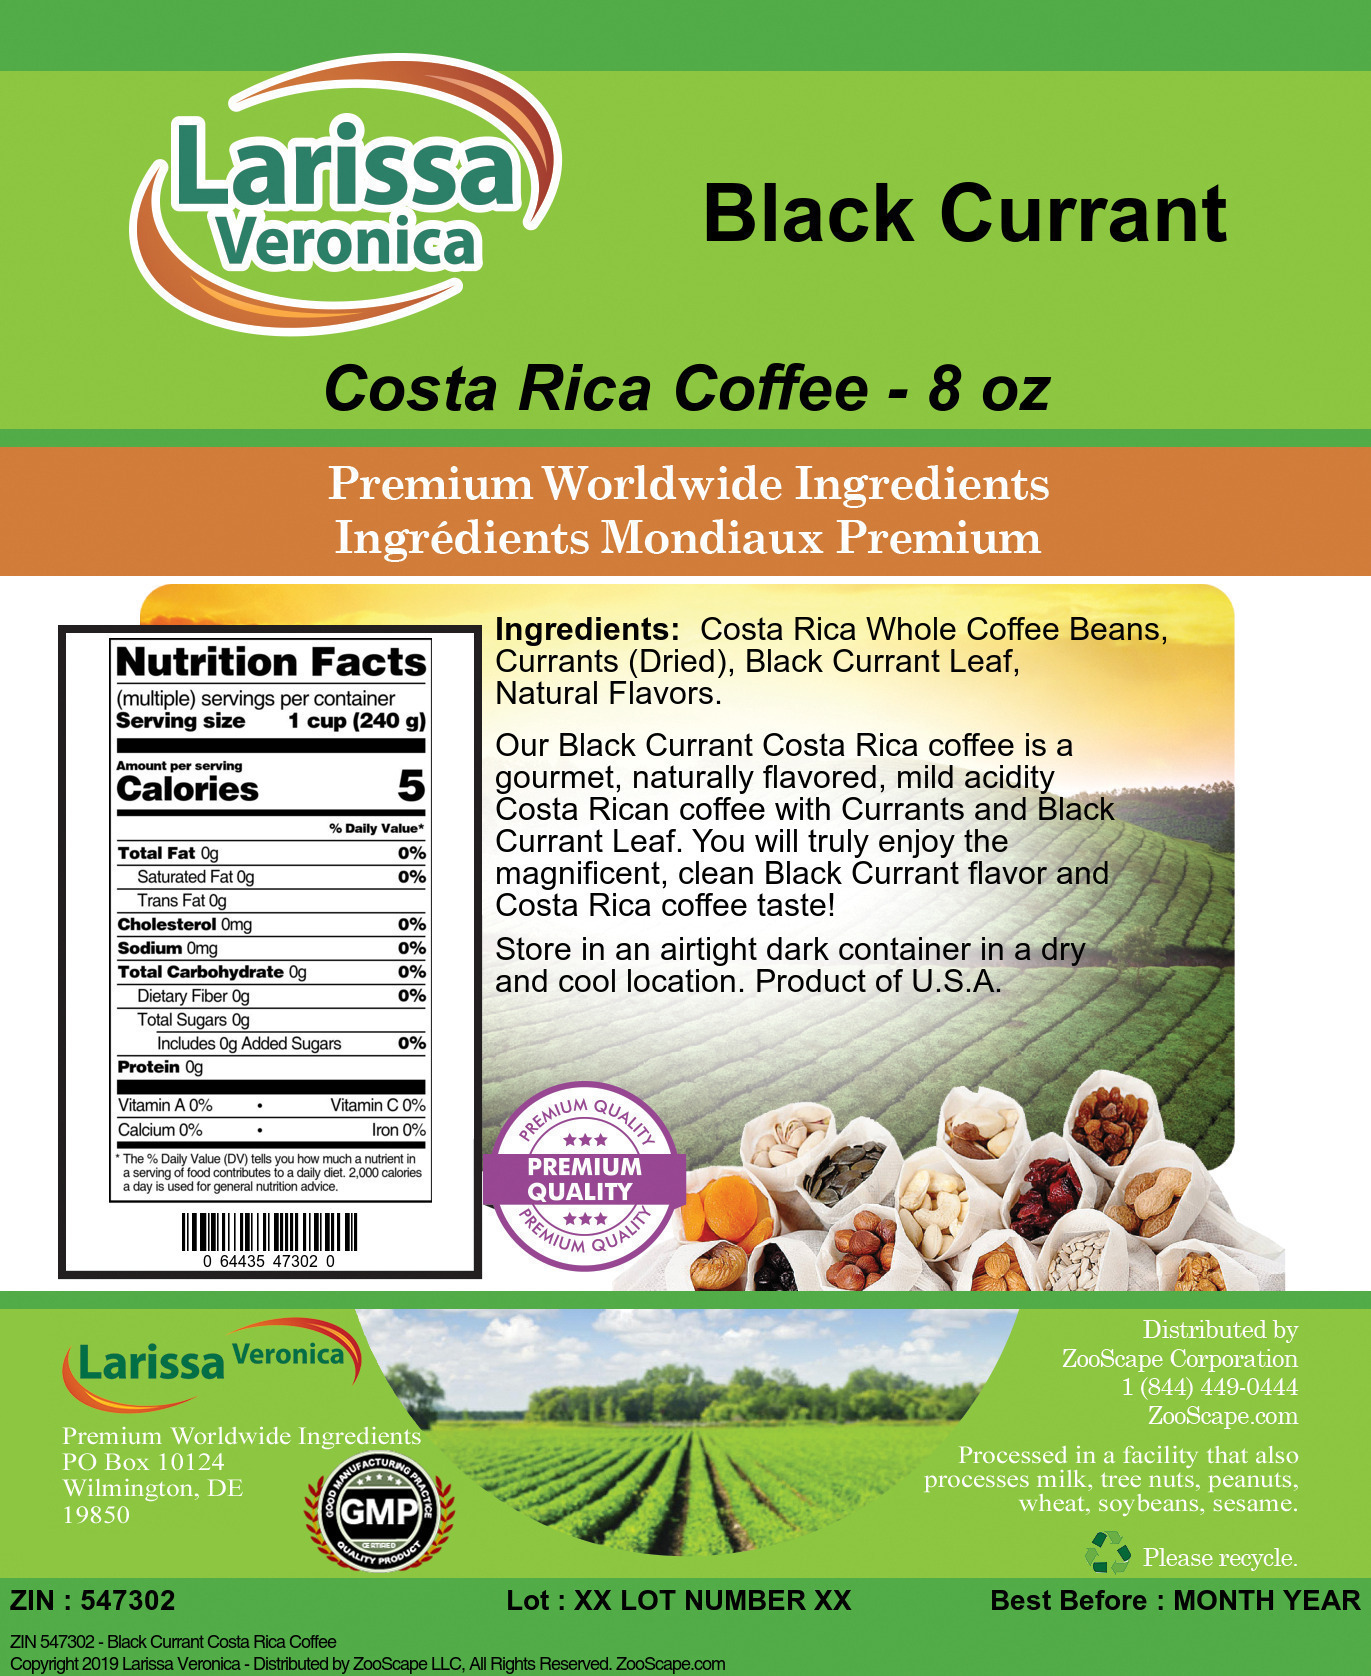 Black Currant Costa Rica Coffee - Label